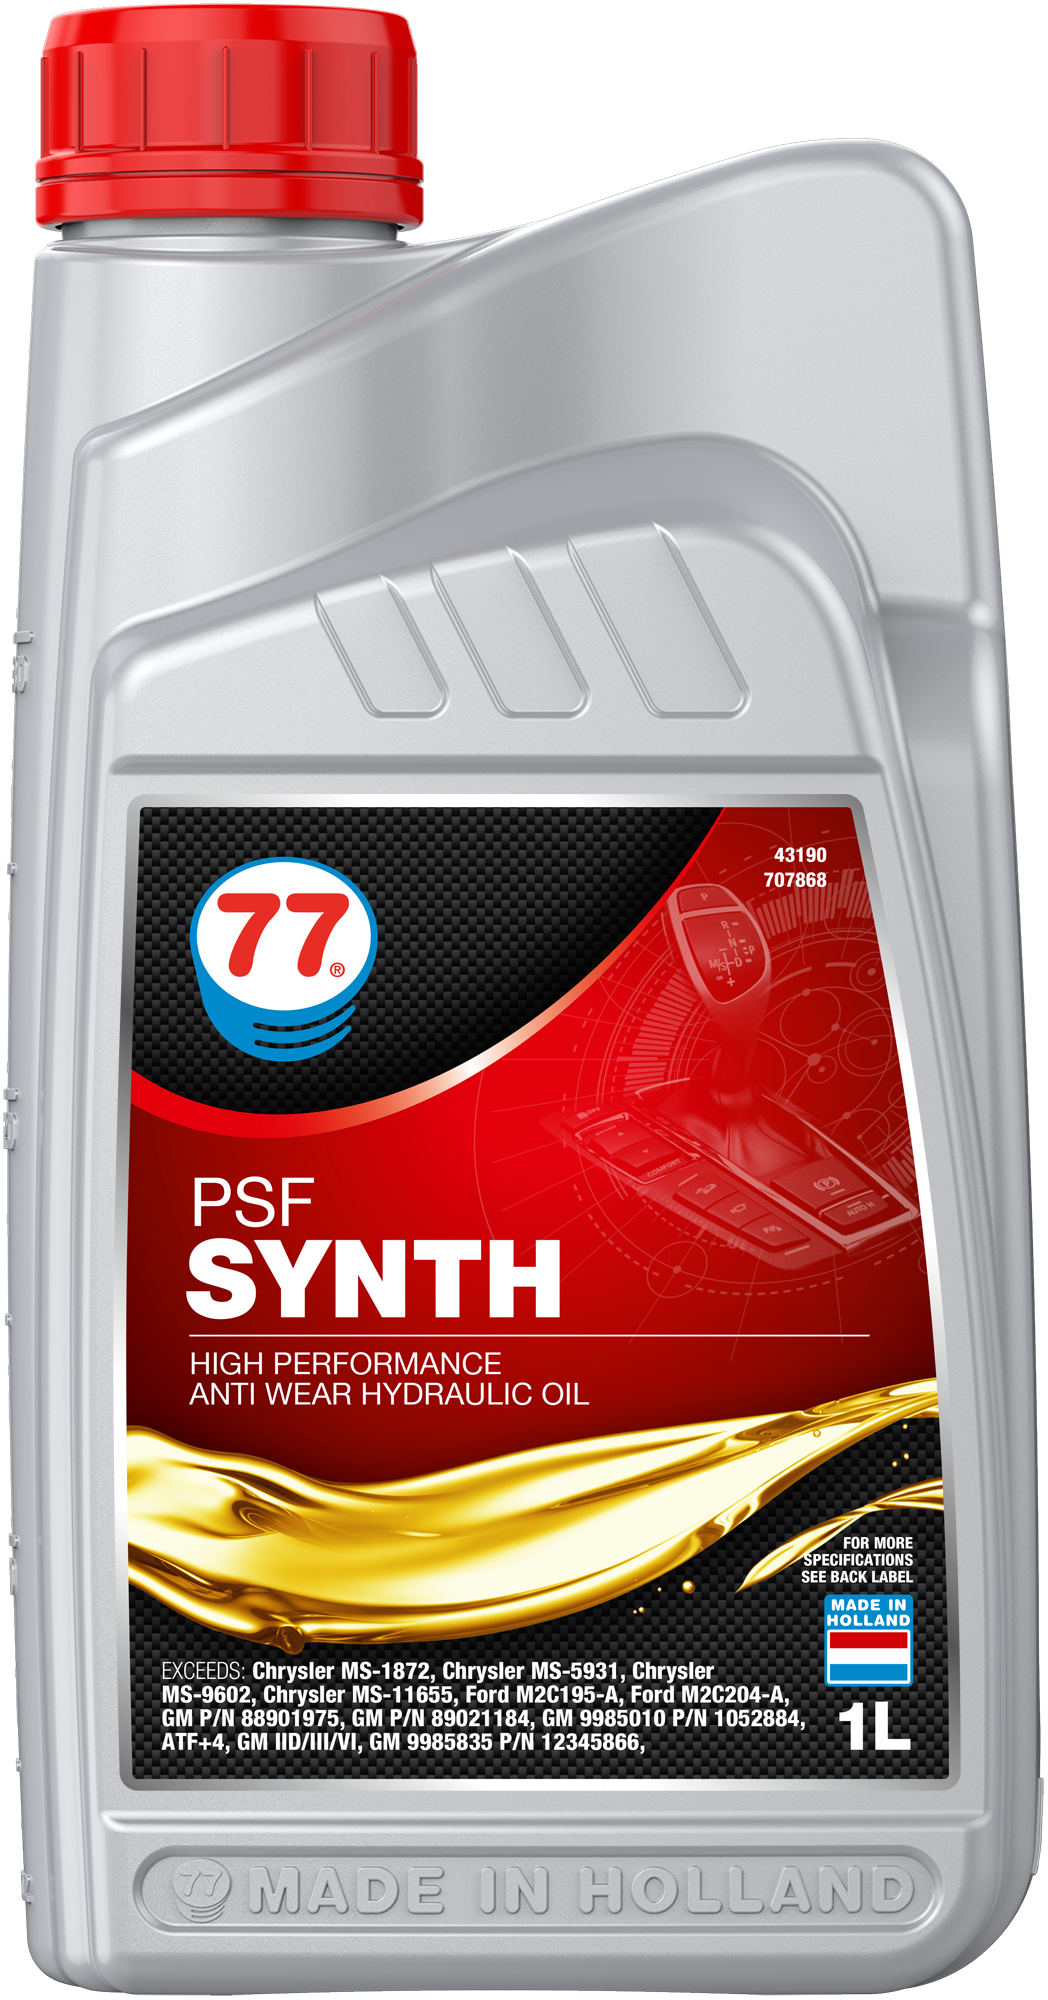 4319-1 PSF Synth is een volledig synthetische, hoogwaardige olie voor centraal hydraulisch systeem op basis van geavanceerde technologie die verbeterde prestaties vertoont met betrekking tot viscositeitstemperatuurkenmerken en tegelijkertijd geoptimaliseerde afschuifstabiliteit.